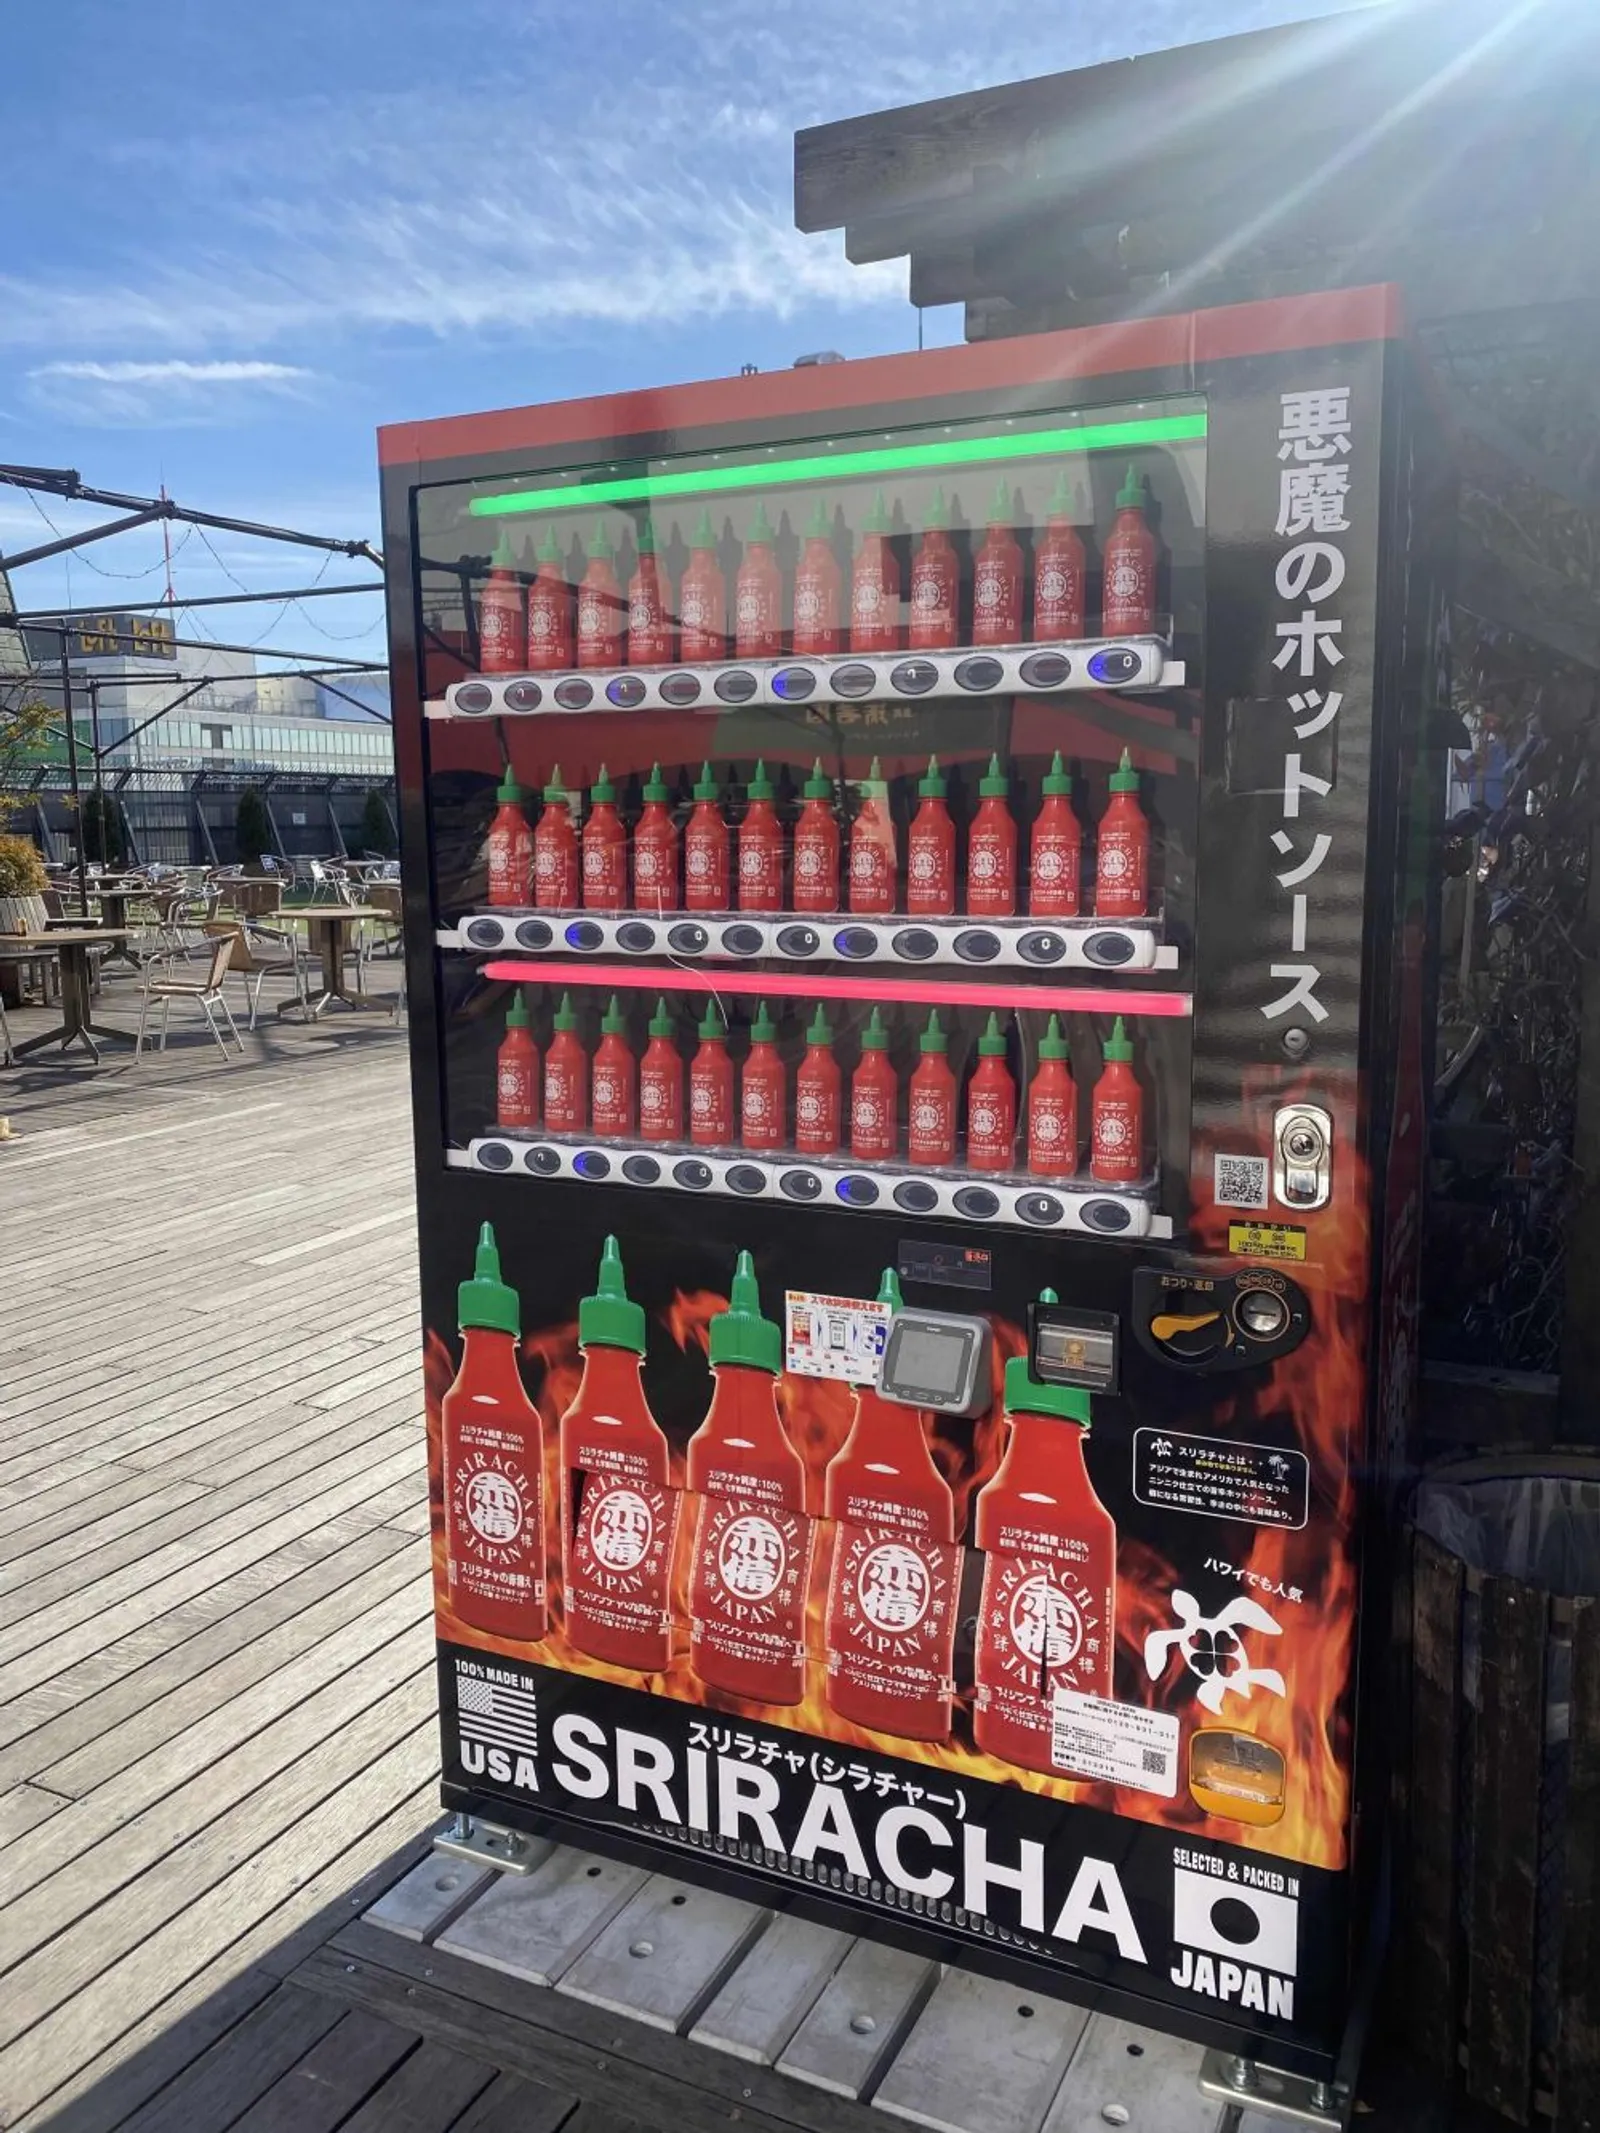 10 Vending Machine Paling Unik di Dunia, Ada Buku Hingga Gameboy